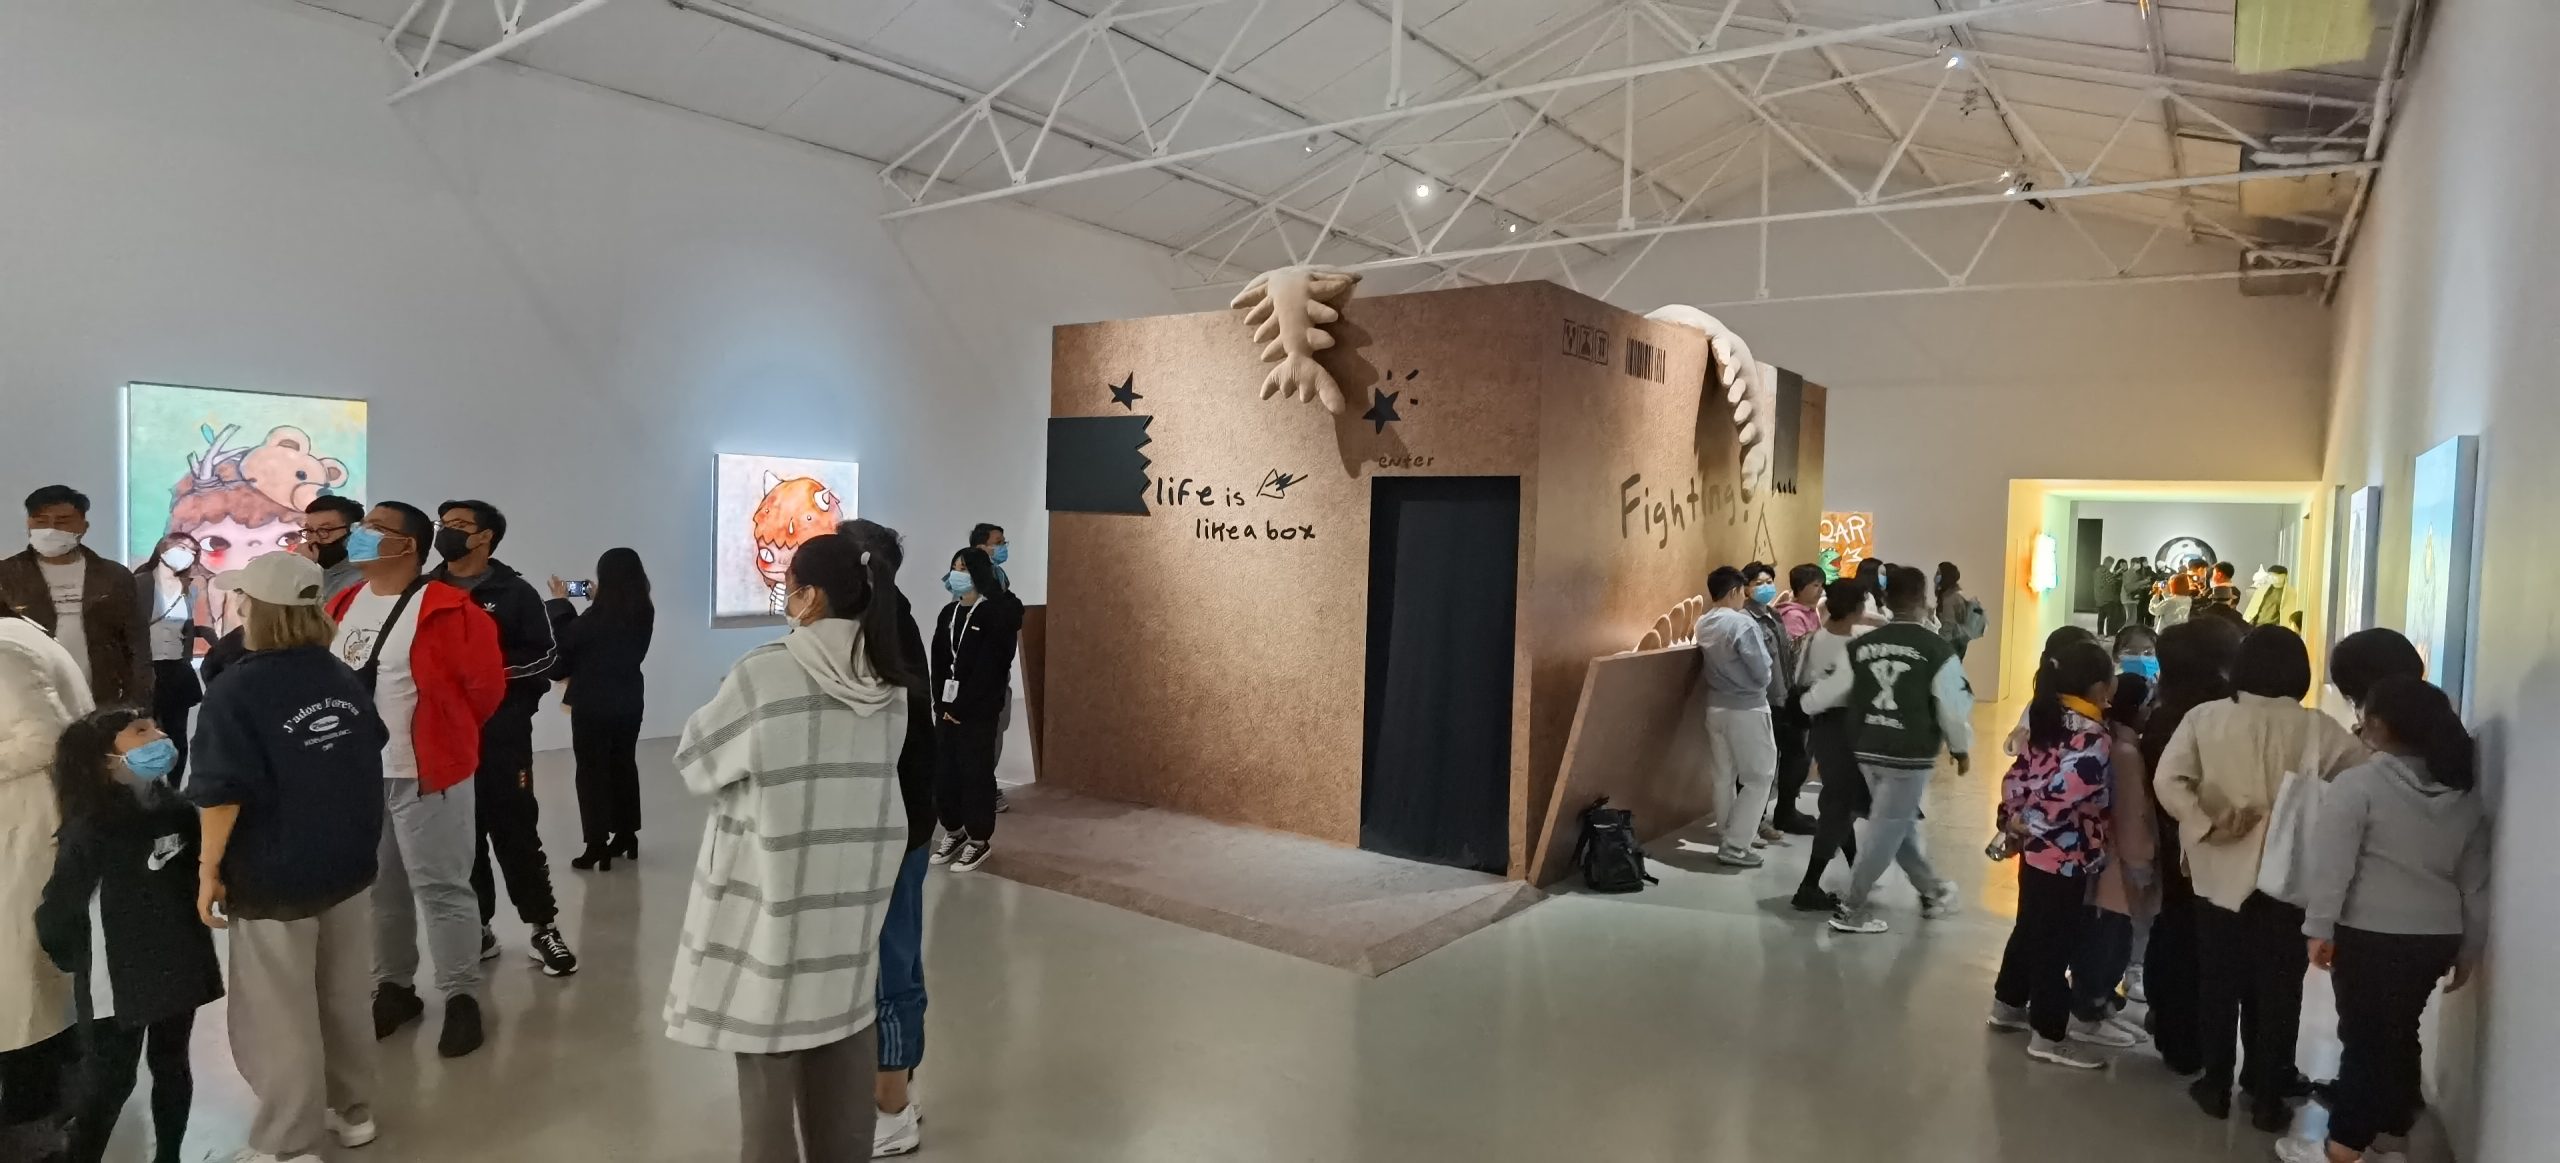 【2021年10月】墨境轩组织学生走进“松美术馆，泡泡玛特的Hirono（小野）线下艺术展览” 活动 第7张